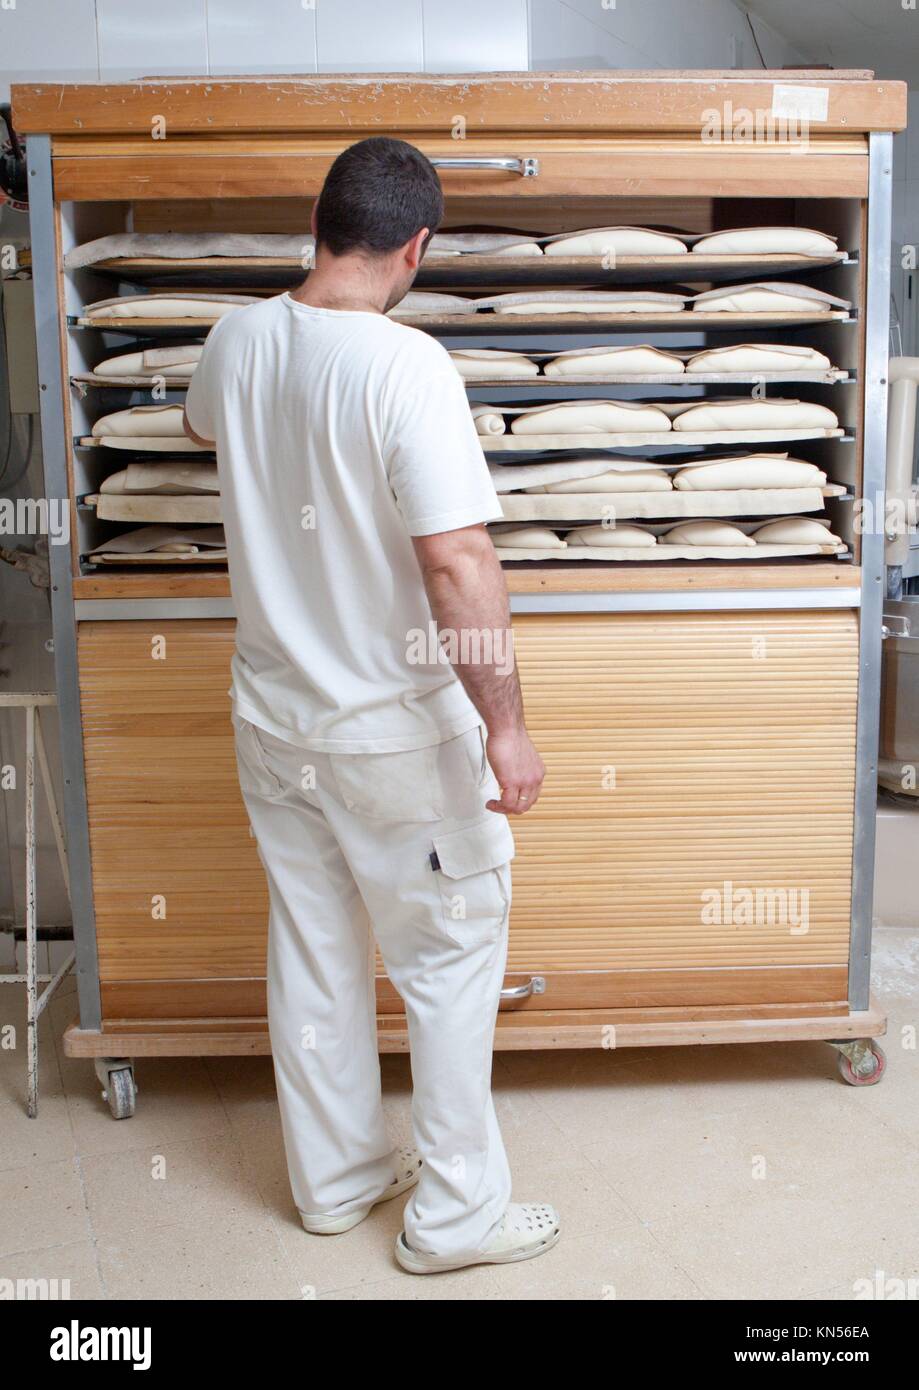 Comprobación de Baker trozos de pan en el armario de madera de fermentación. Proceso de fabricación de pan español. Foto de stock